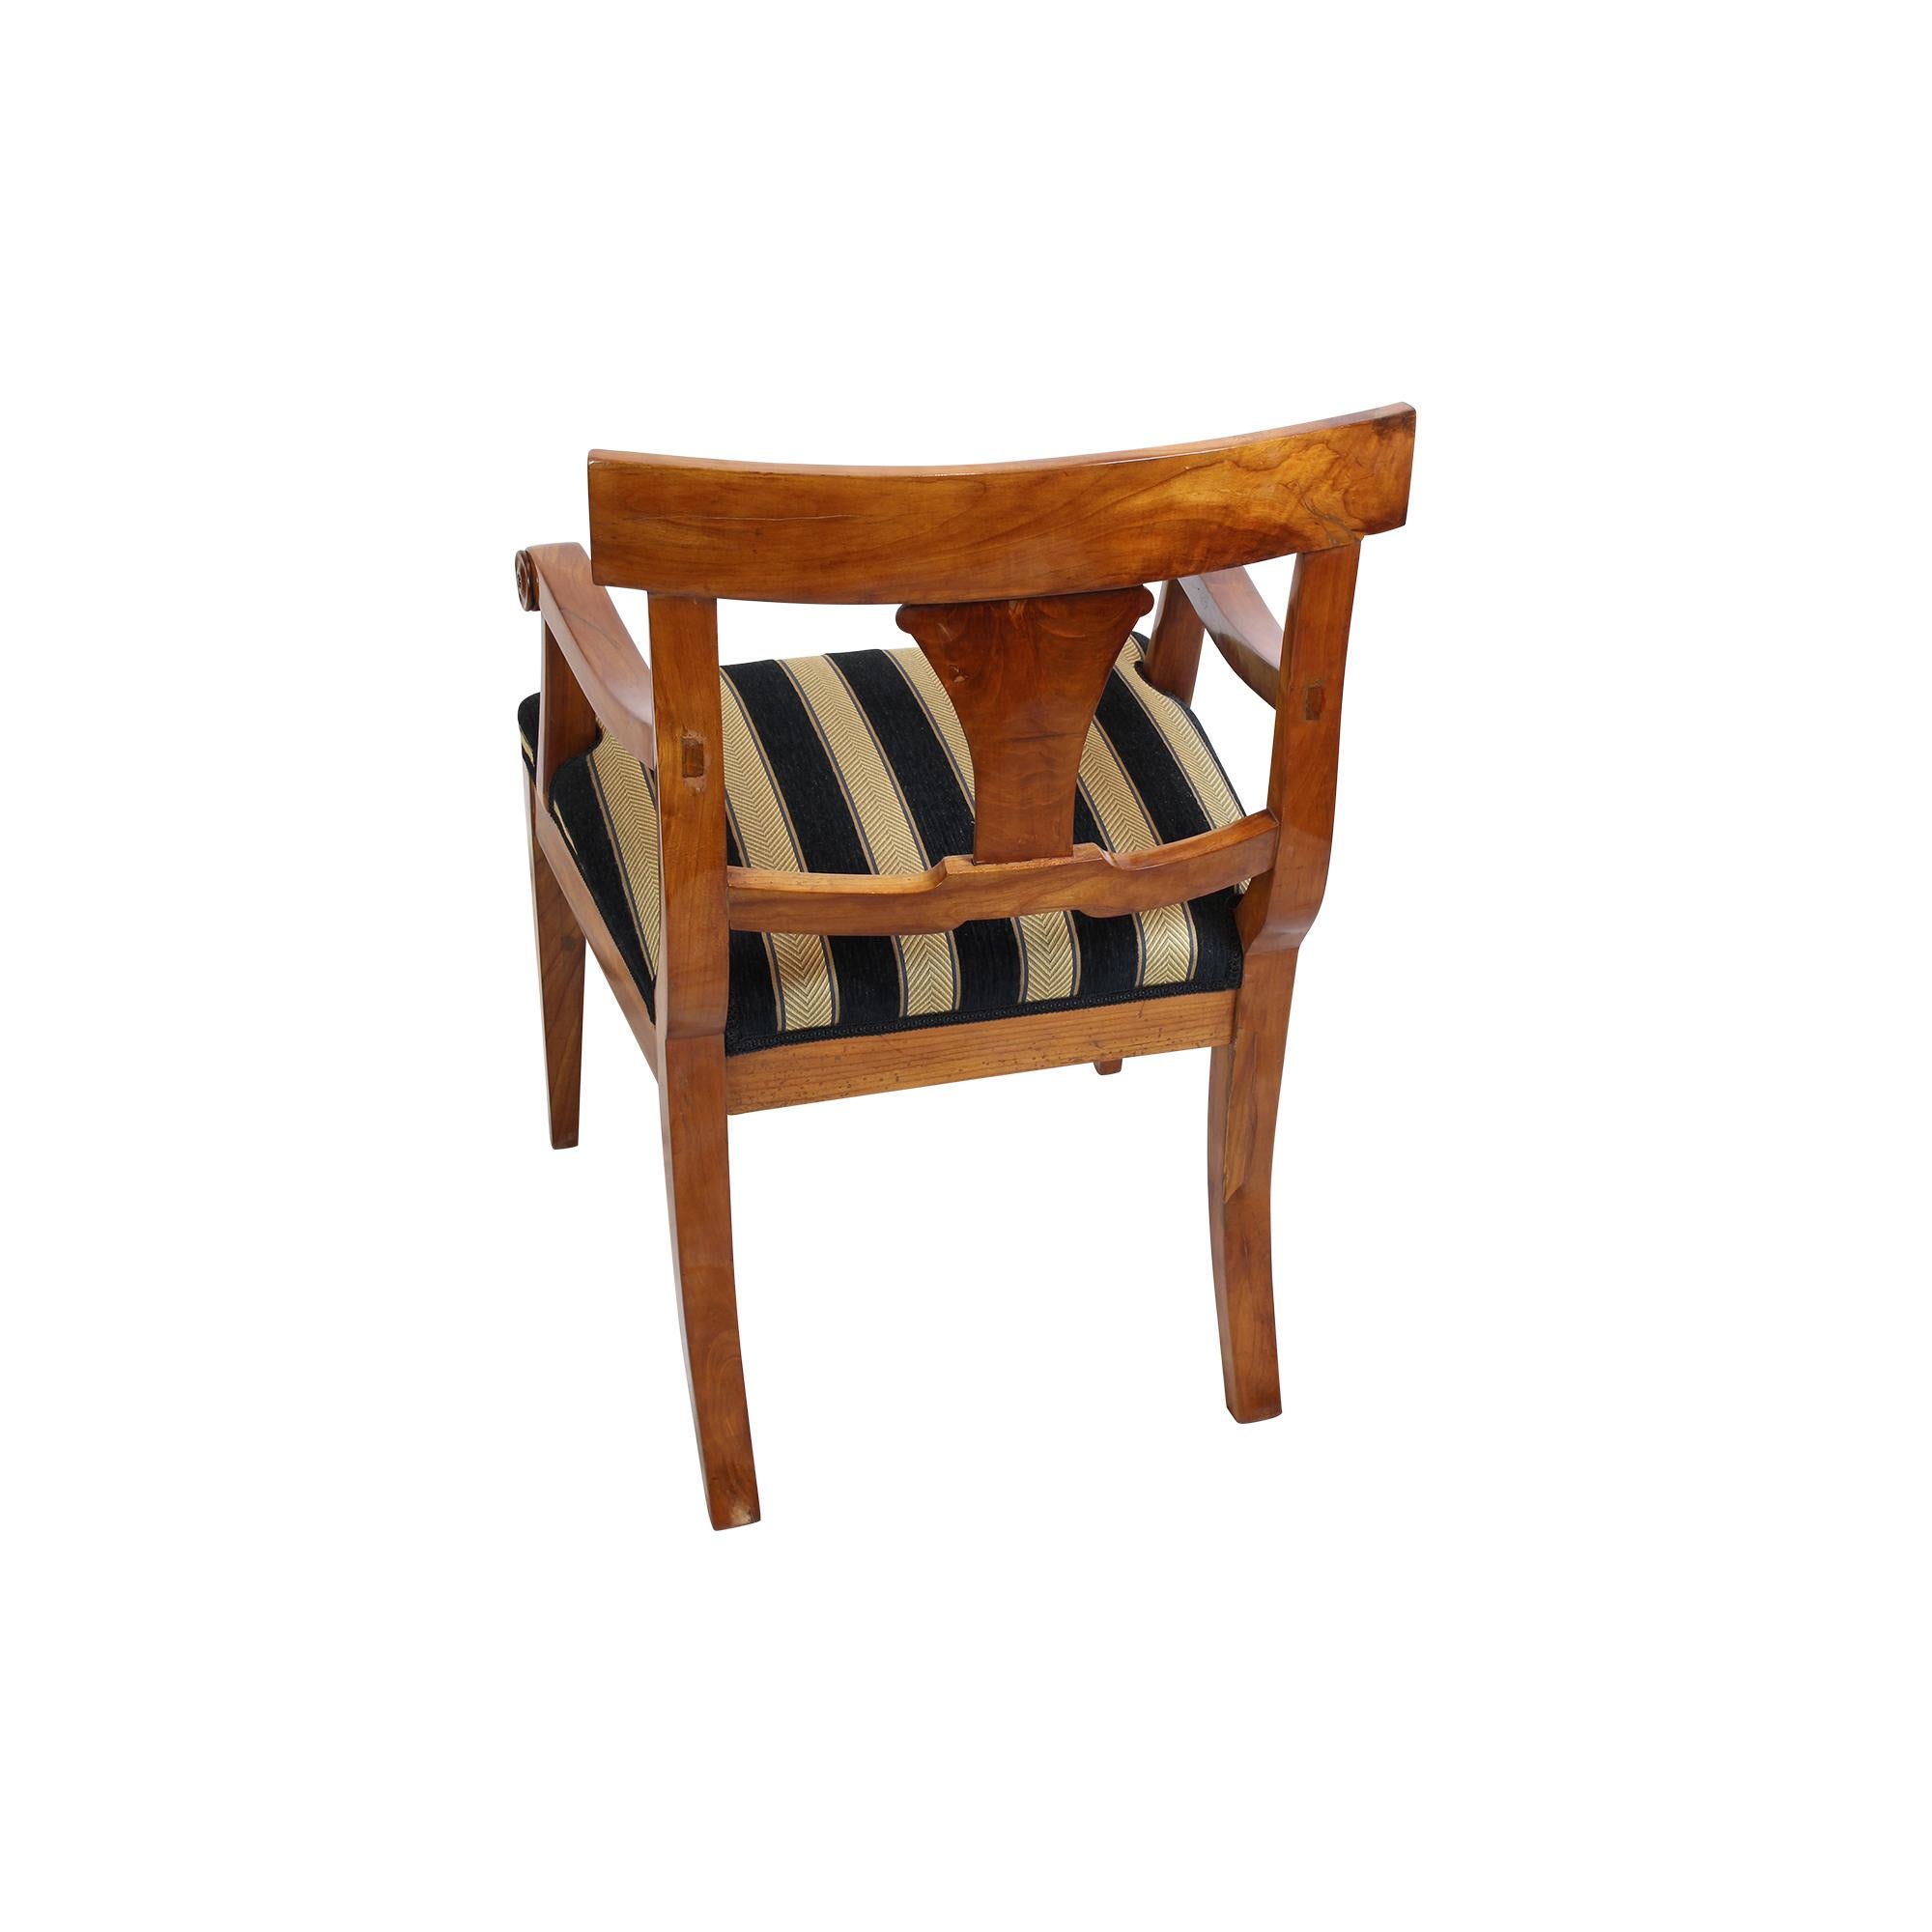 Sehr schöner Biedermeier-Sessel aus dem frühen 19. Jahrhundert. Der Sessel wurde aus massiver Kirsche gefertigt und von Hand poliert. Der Sessel ist in sehr gutem, neu gepolstertem Zustand. Die Holzfarbe ist kräftige dunkle Kirsche.